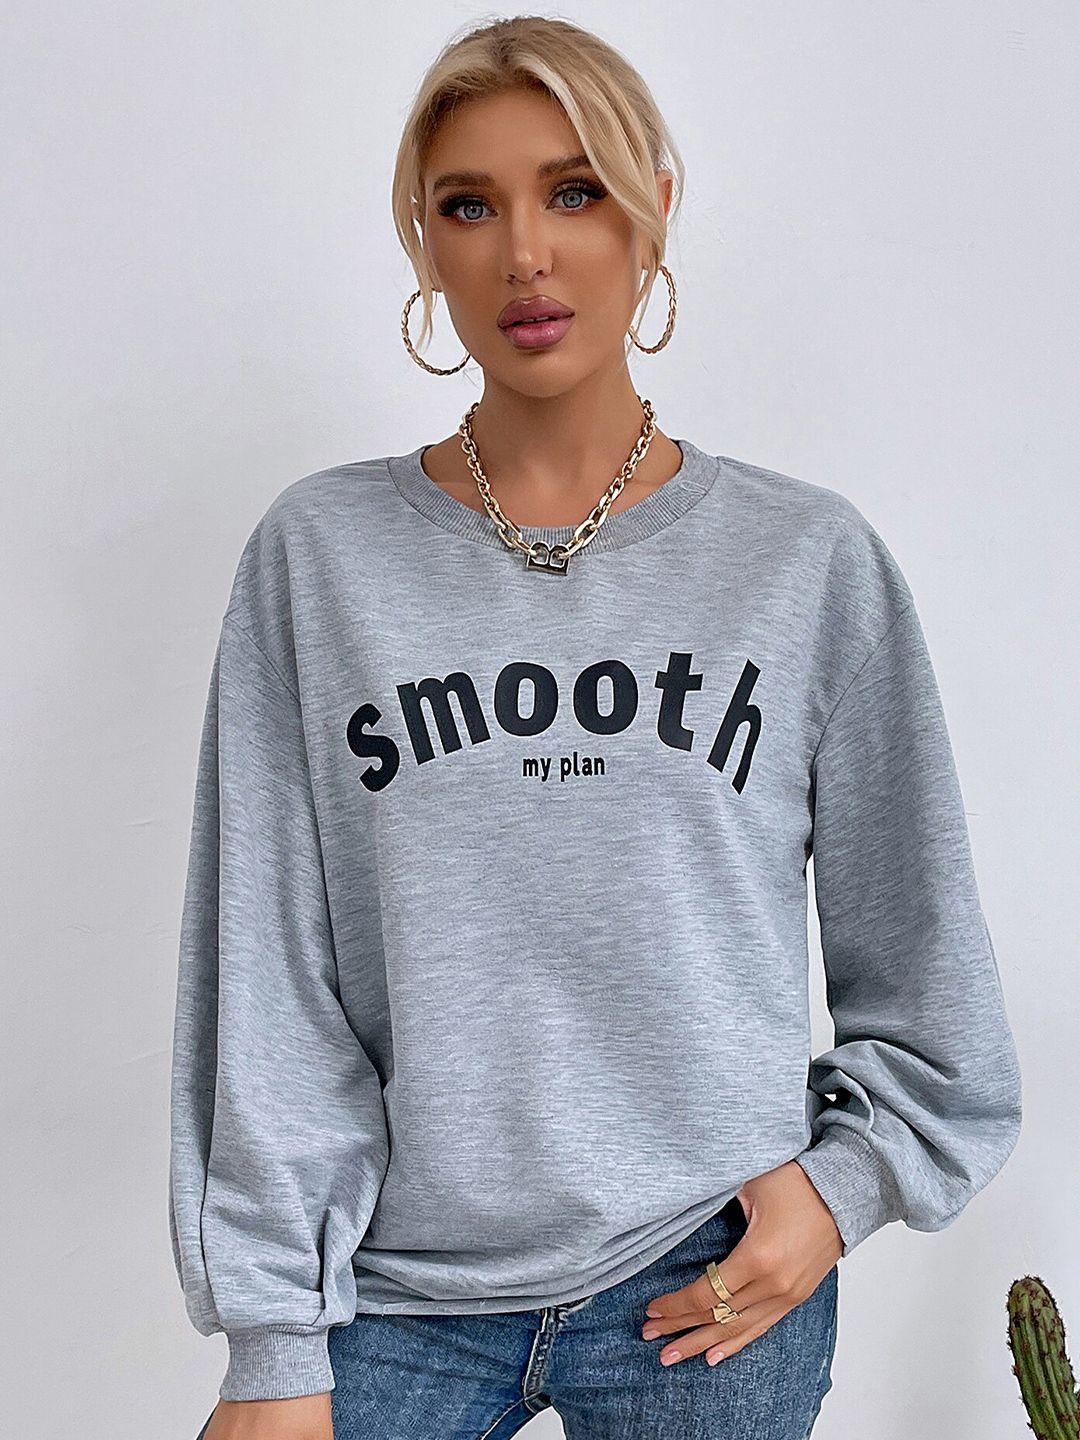 lulu & sky printed loose fit pullover sweatshirt